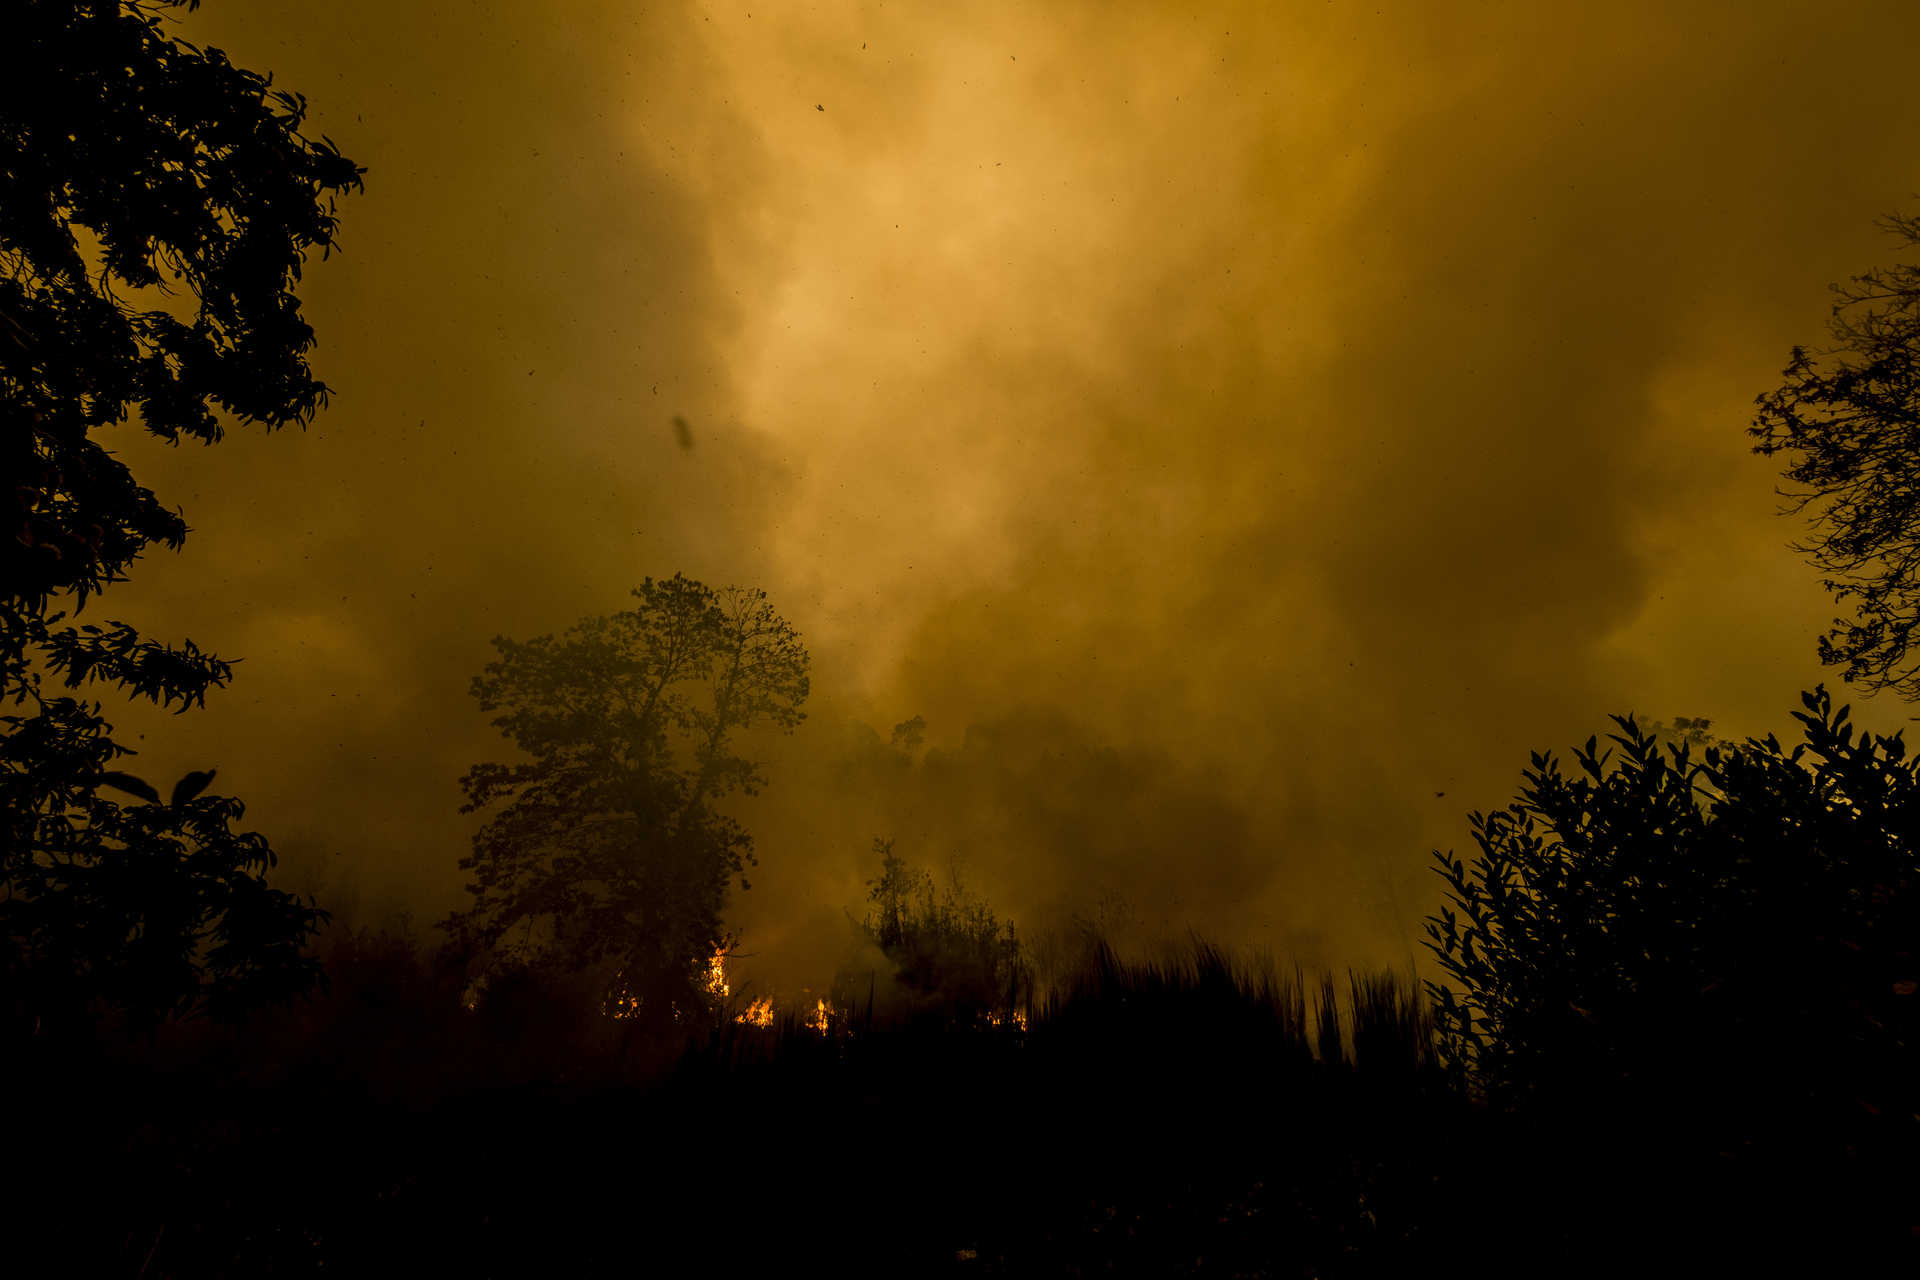 Rasto de destruição do incêndio que lavrou esta noite em Vouzela, até ao momento esta tragedia vitimou 35 pessoas e deixou 56 feridos